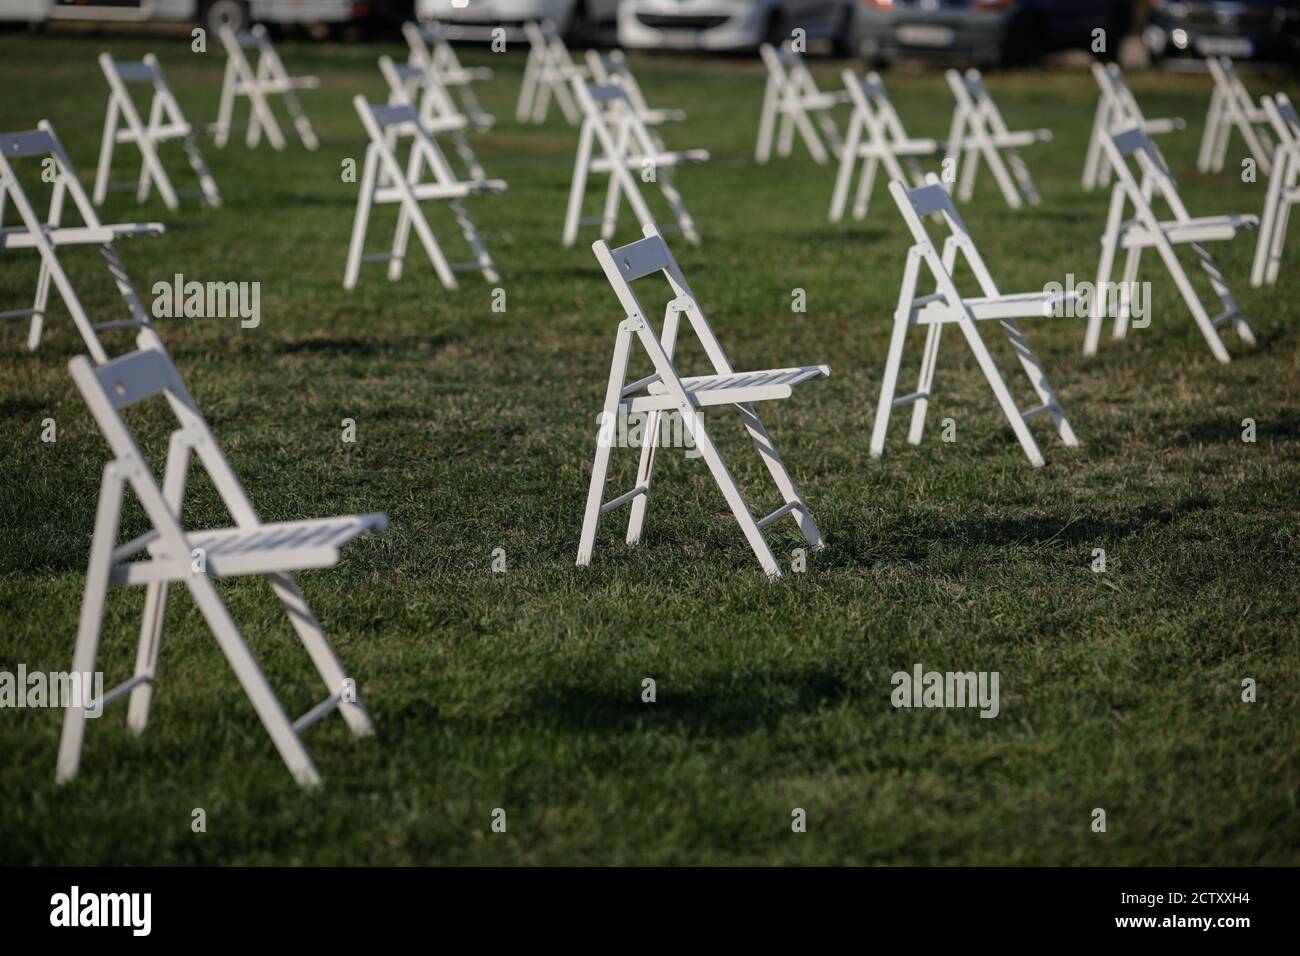 Stühle auseinander, um die soziale Distanz zu halten Während des Covid-19 Ausbruchs bei einem Outdoor-Event auf dem Gras Stockfoto